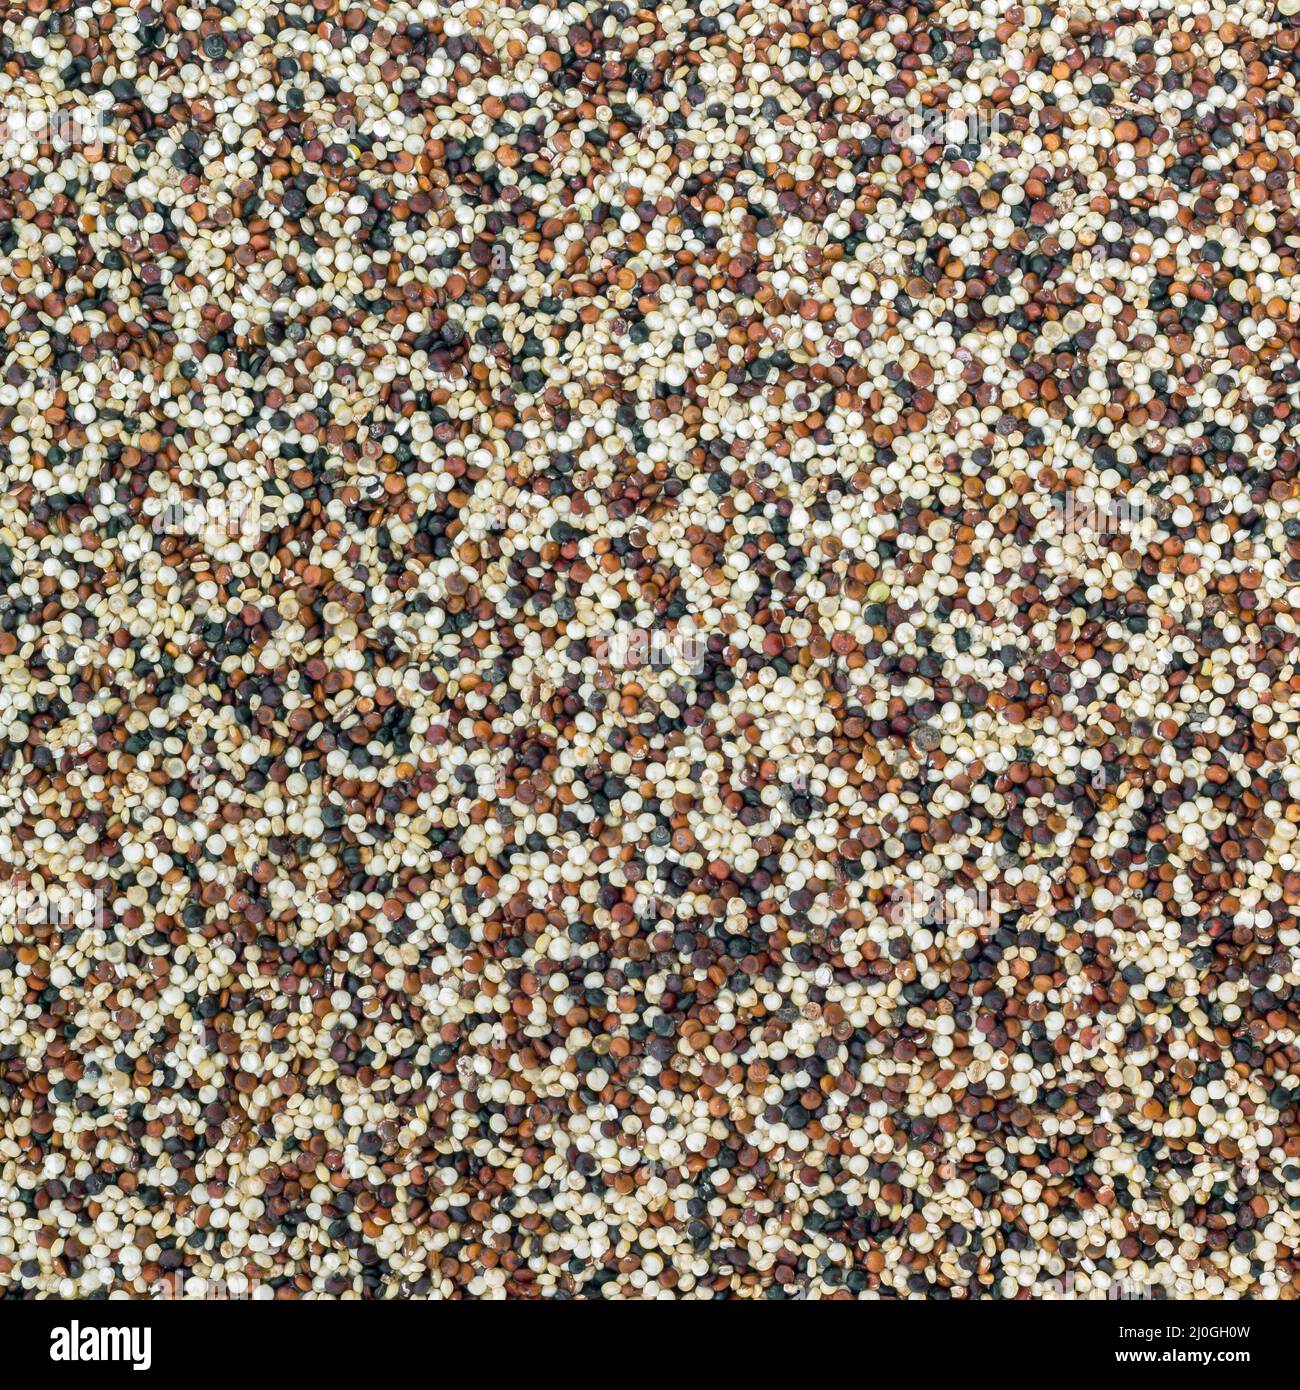 Seeds of quinoa Stock Photo